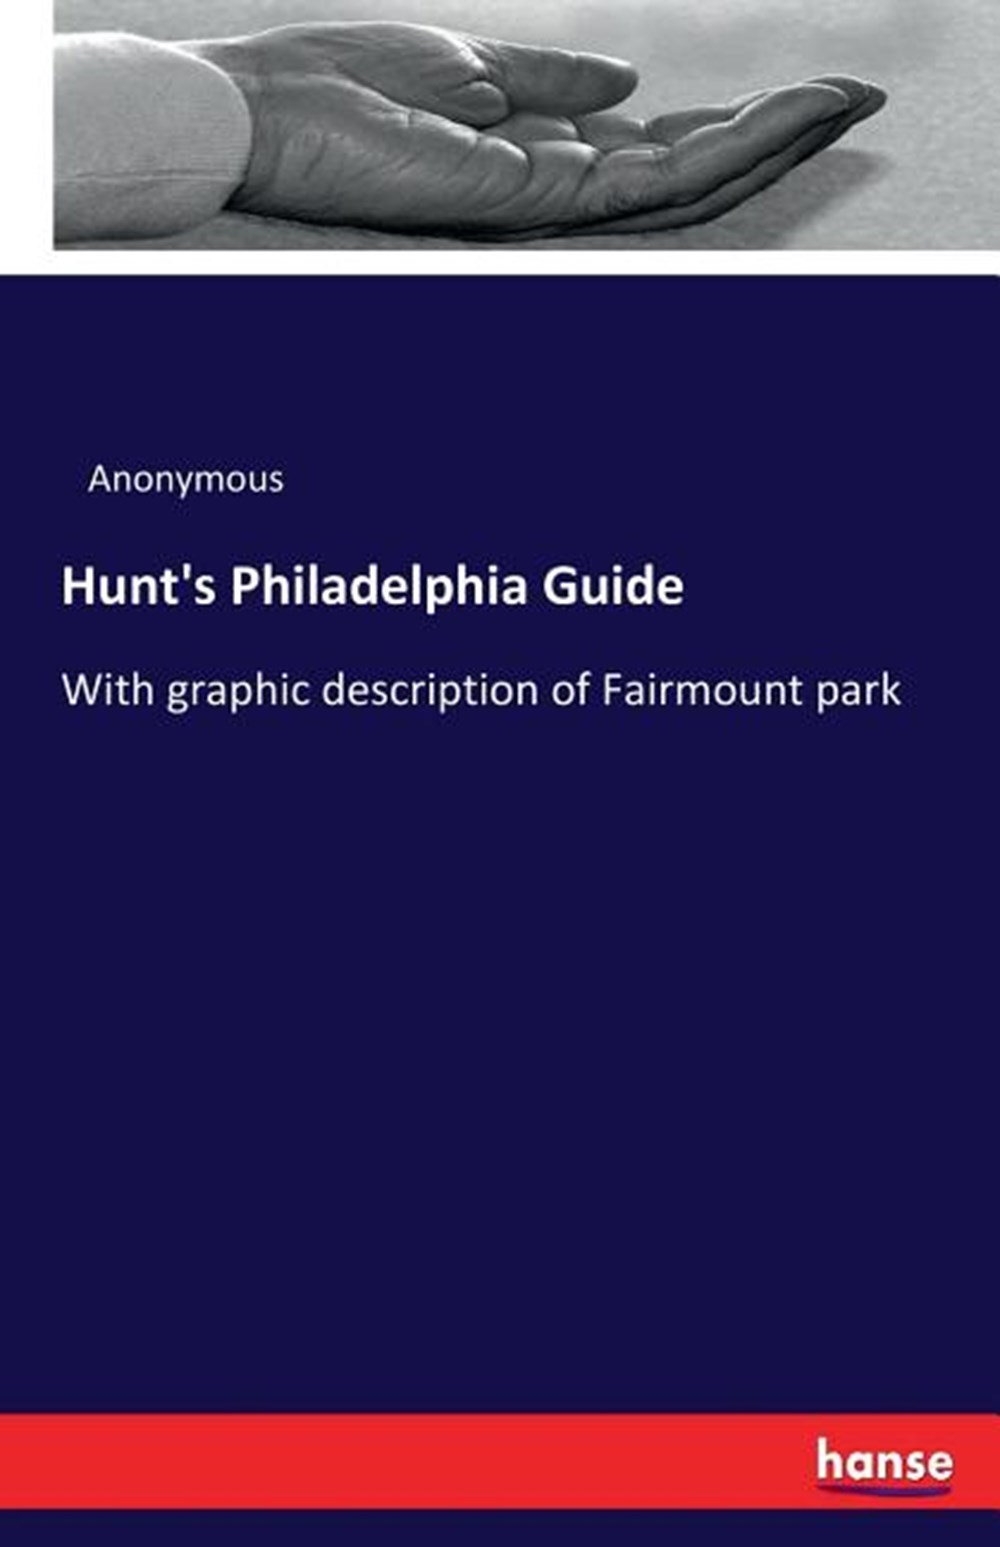 Hunt's Philadelphia Guide: With graphic description of Fairmount park